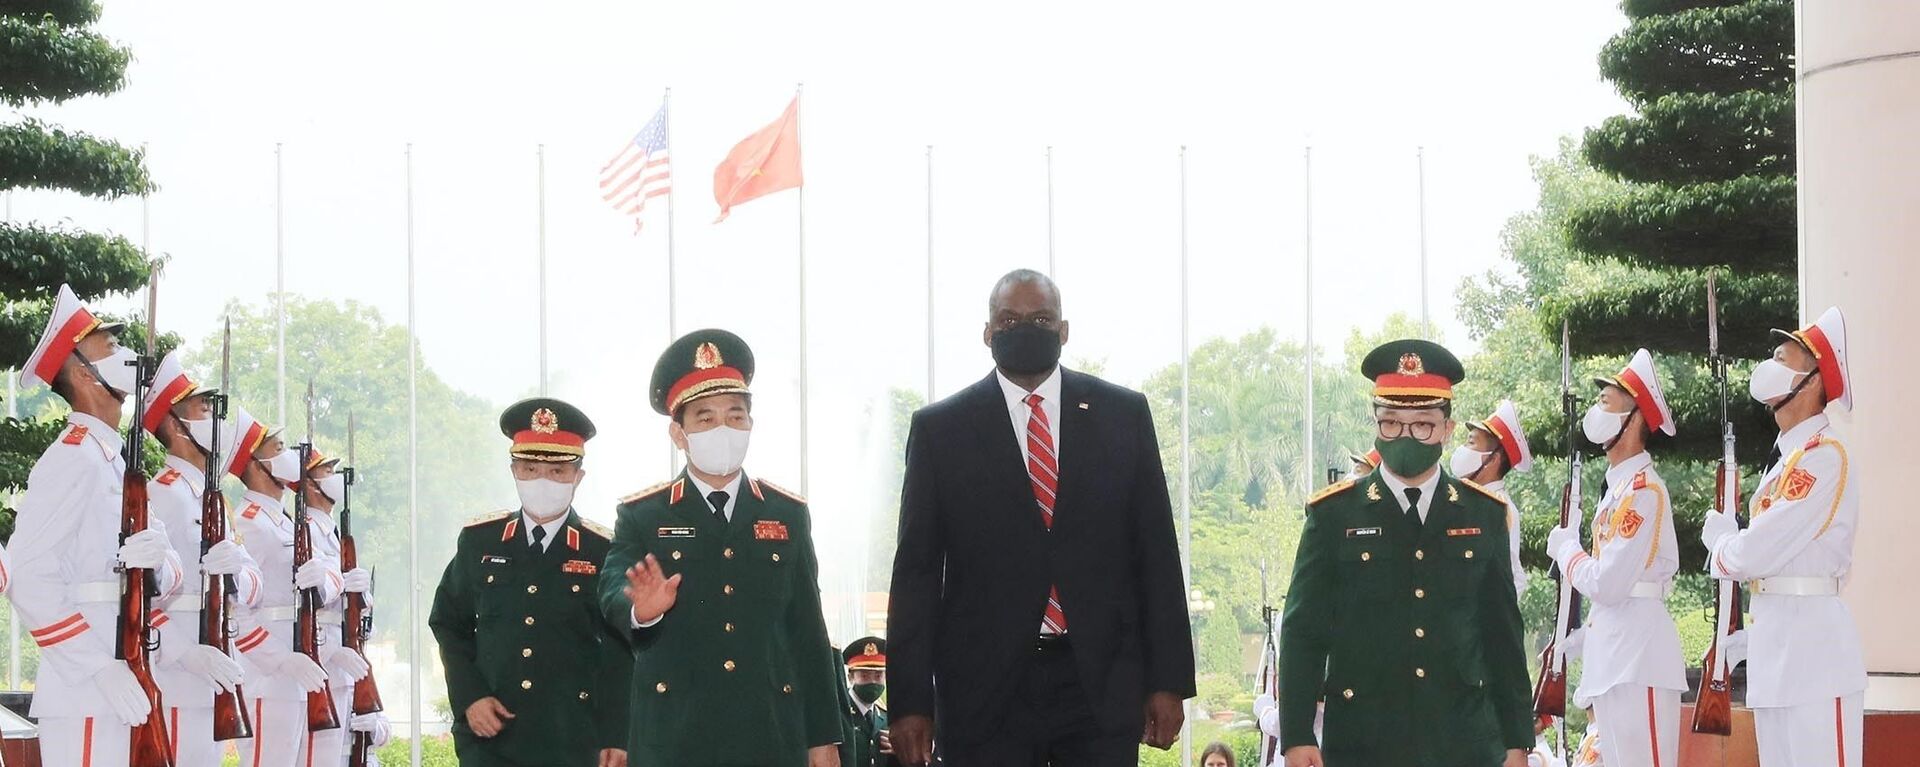 Bộ trưởng Quốc phòng Hoa Kỳ Lloyd Austin thăm chính thức Việt Nam - Sputnik Việt Nam, 1920, 29.07.2021